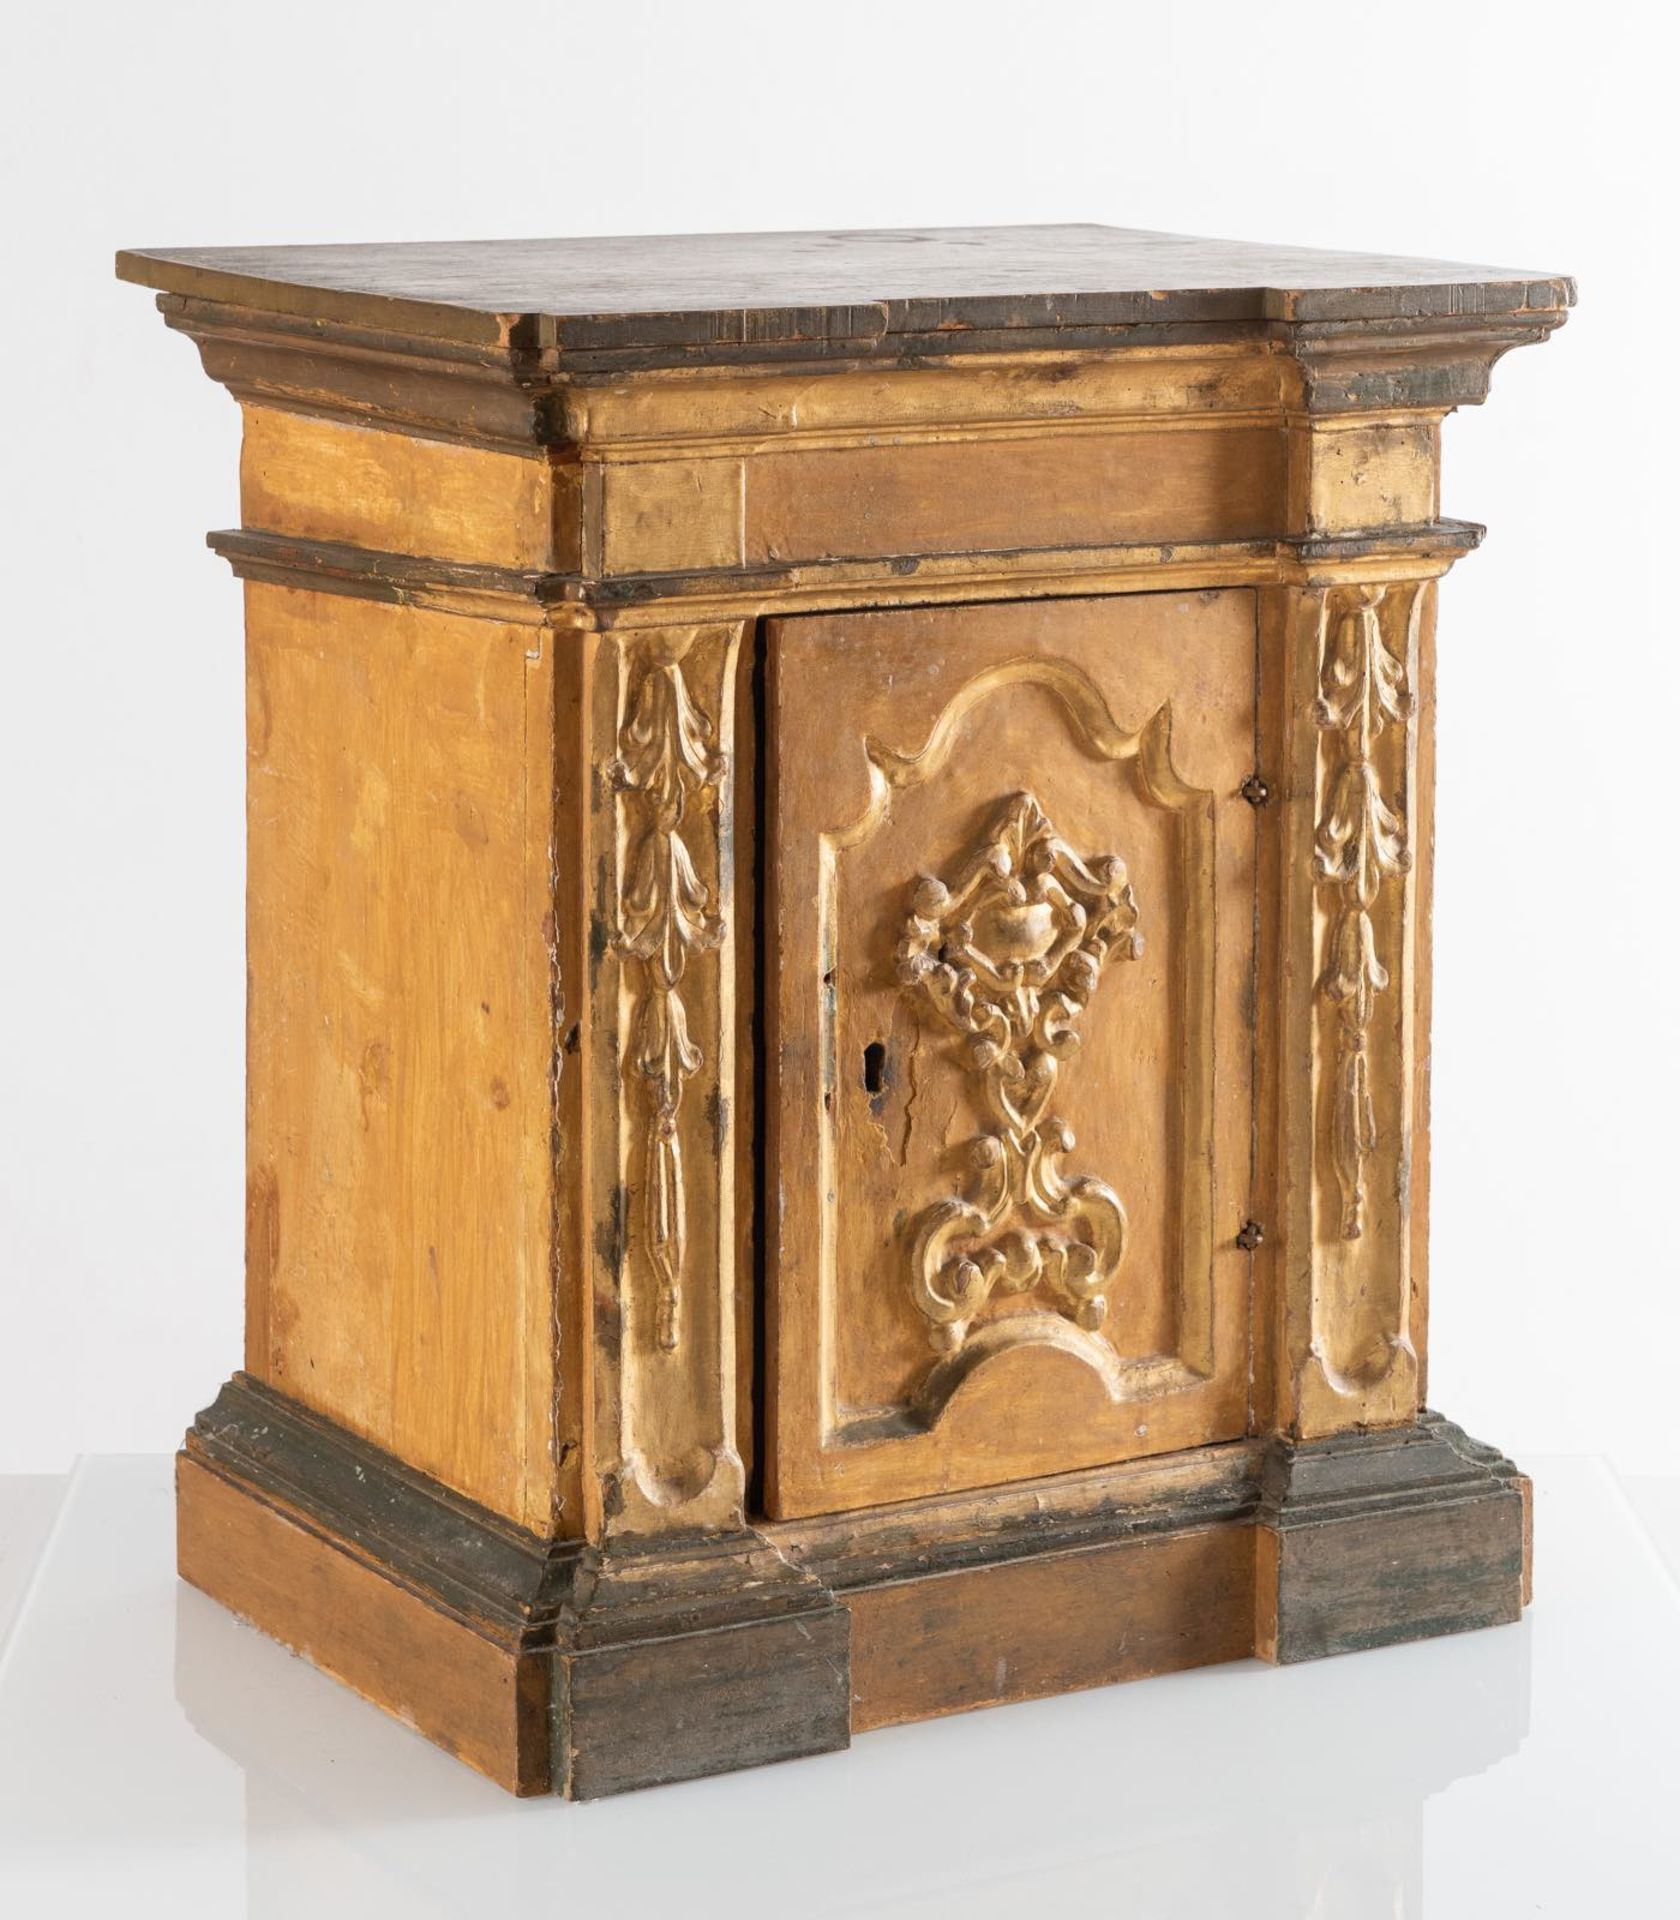 Tabernacolo in legno intagliato, laccato e dorato, Emilia, fine del XVII - inizio del XVIII secolo. - Image 2 of 2